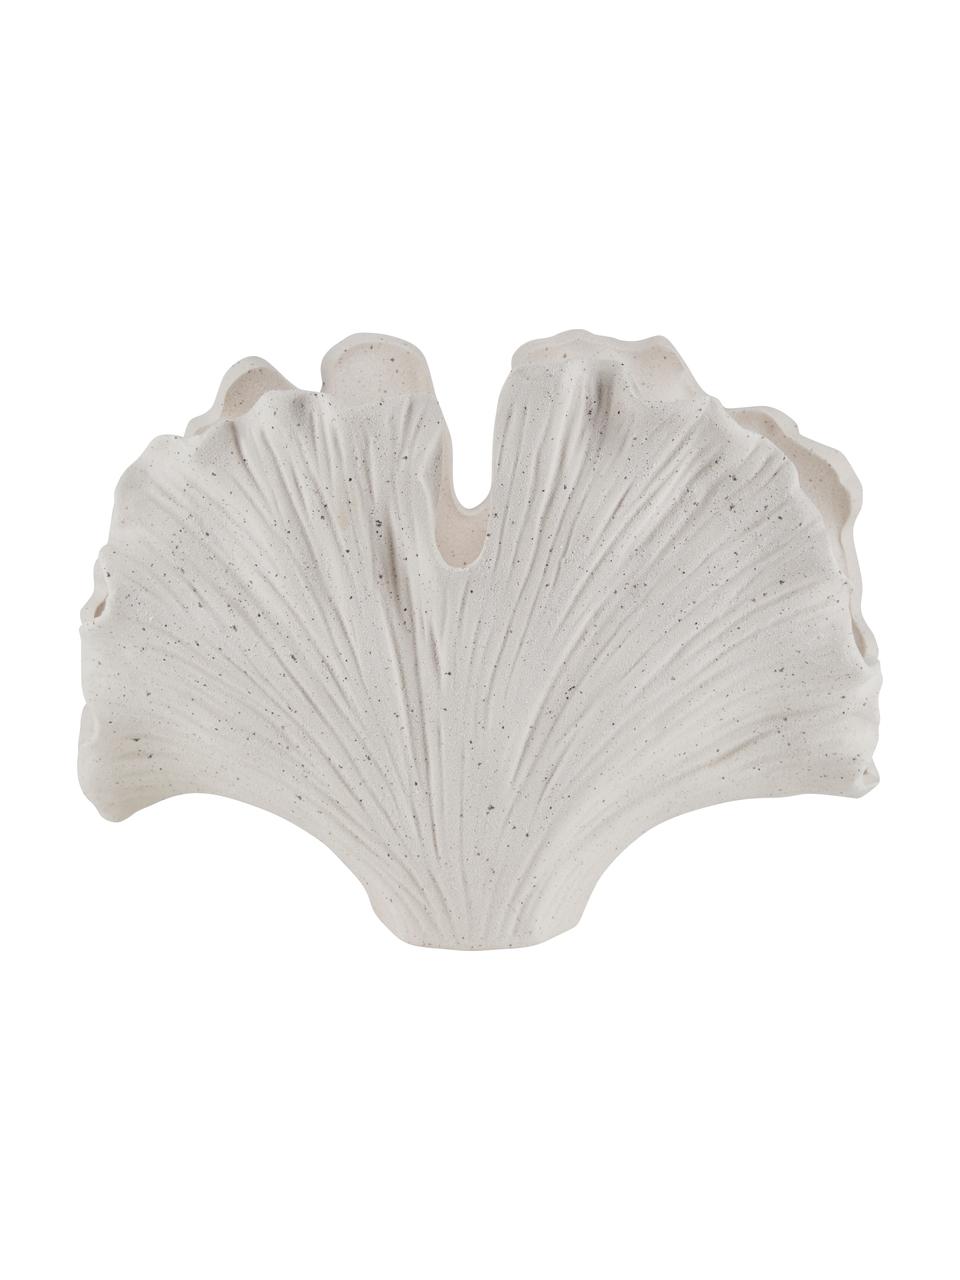 Jarrón de cerámica Seashell, Cerámica, Blanco crema, An 32 x Al 23 cm